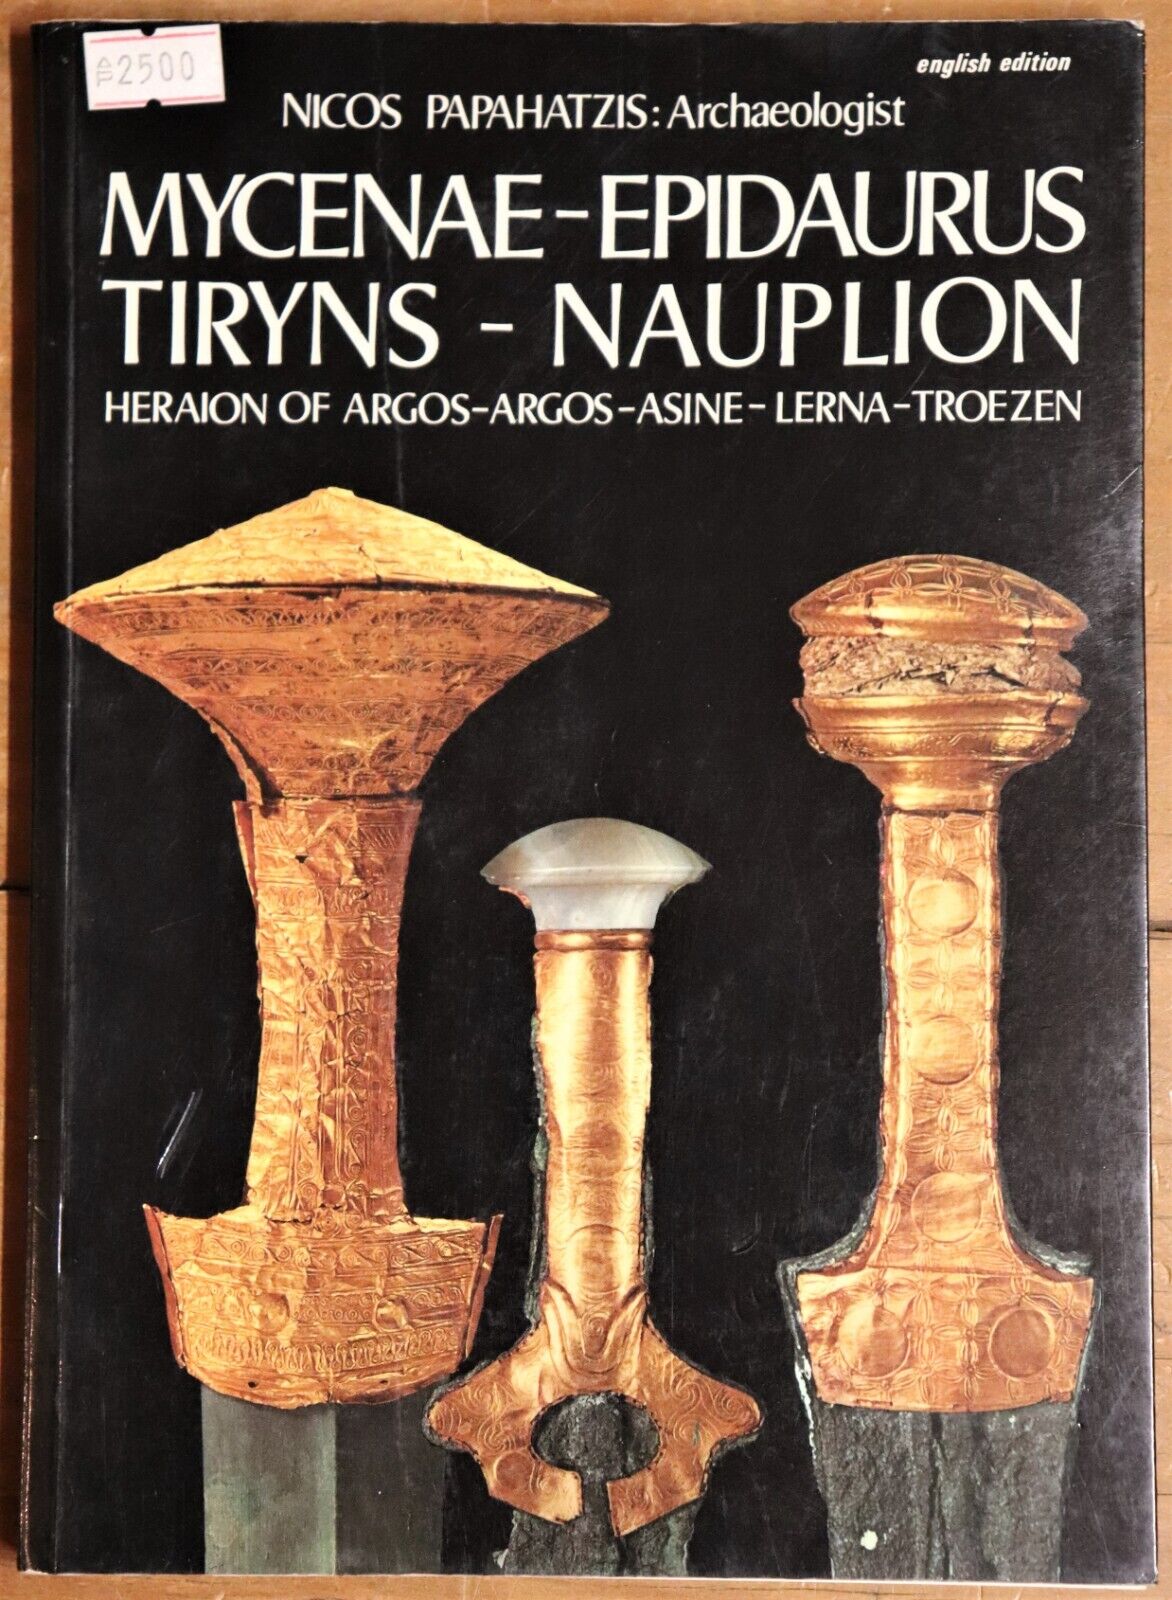 Mycenae-Epidaurus Tiryns-Nauplion - 1978 - Greek Archaeology Book